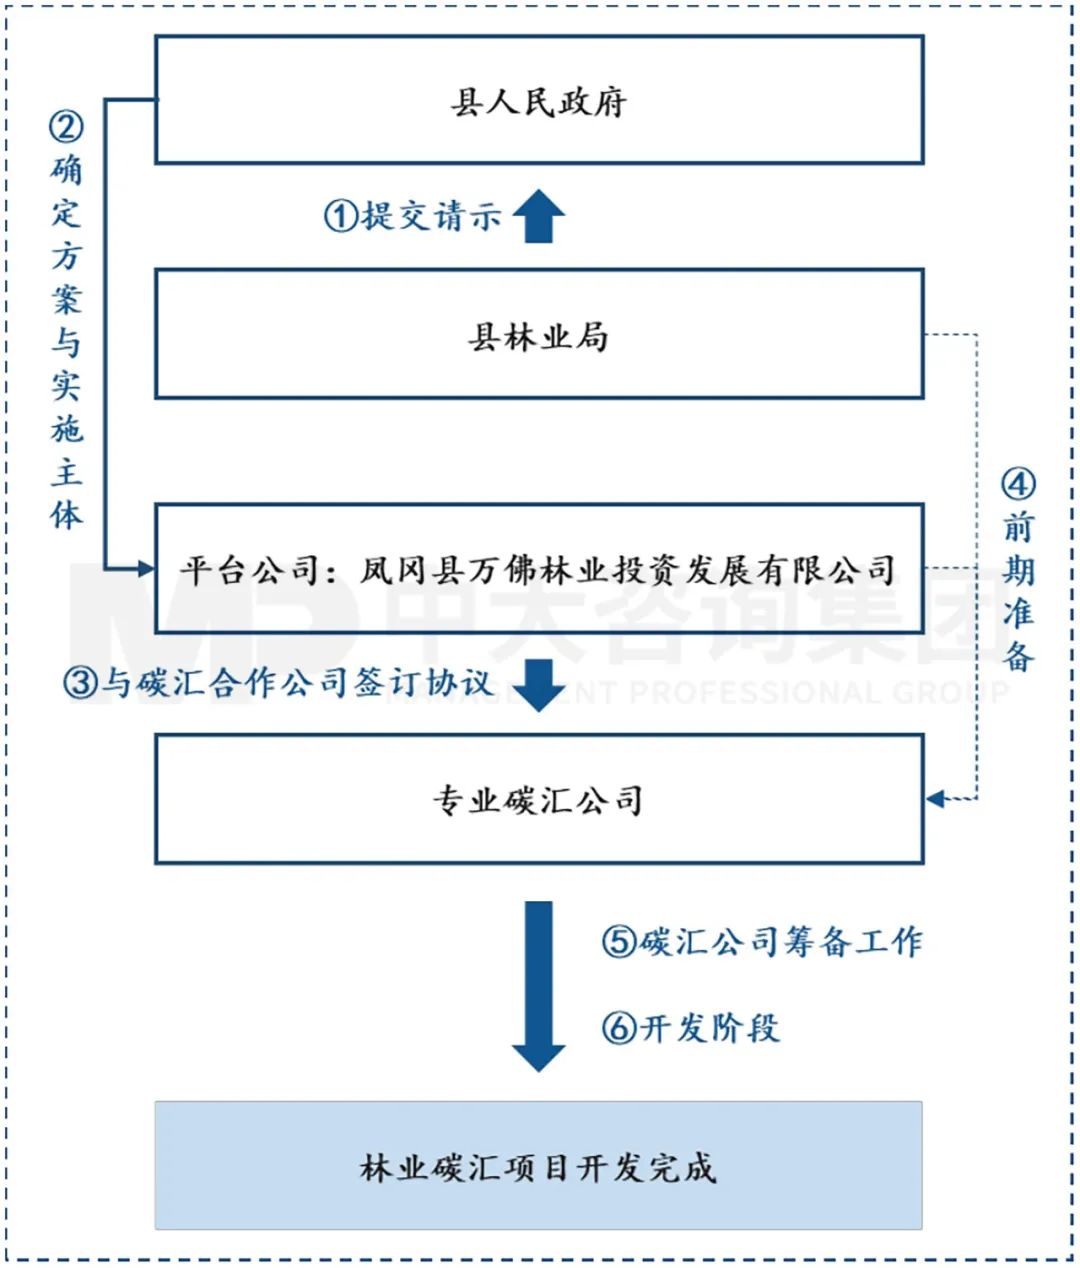 图5  凤冈县林业碳汇开发项目实施步骤